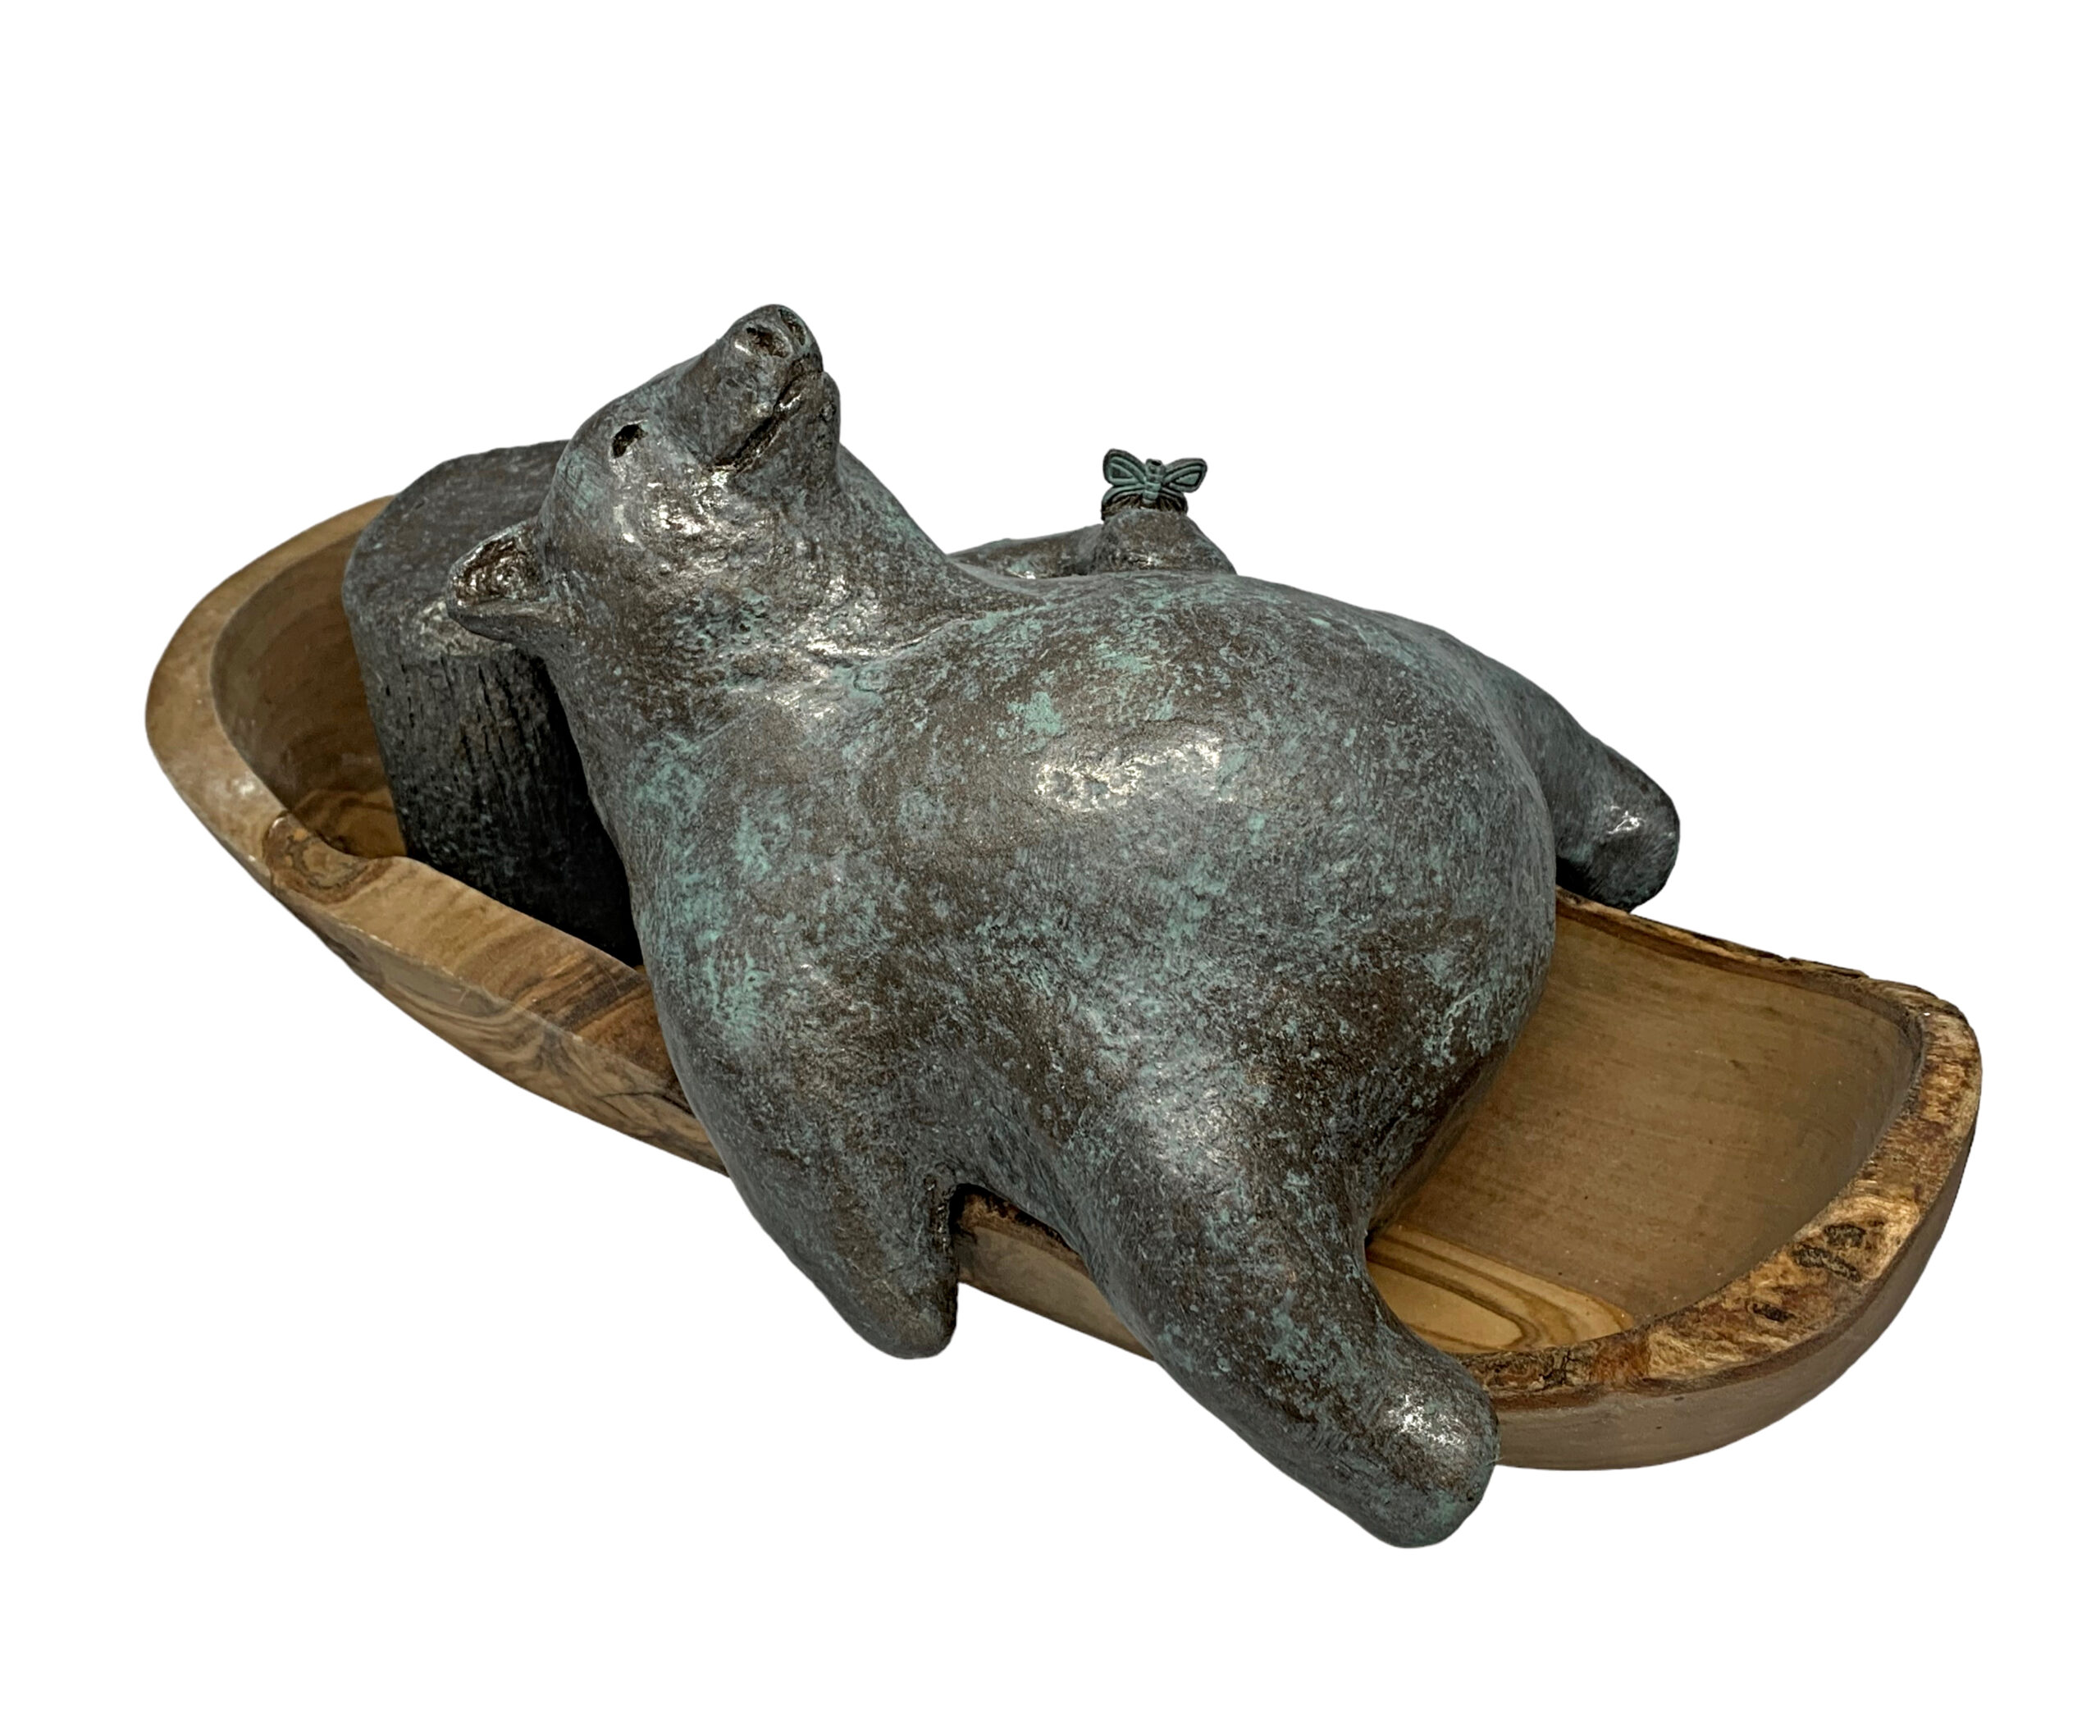 Life is Good - Kayak, mixed media bear sculpture by Karin Taylor | Effusion Art Gallery, Invermere BC